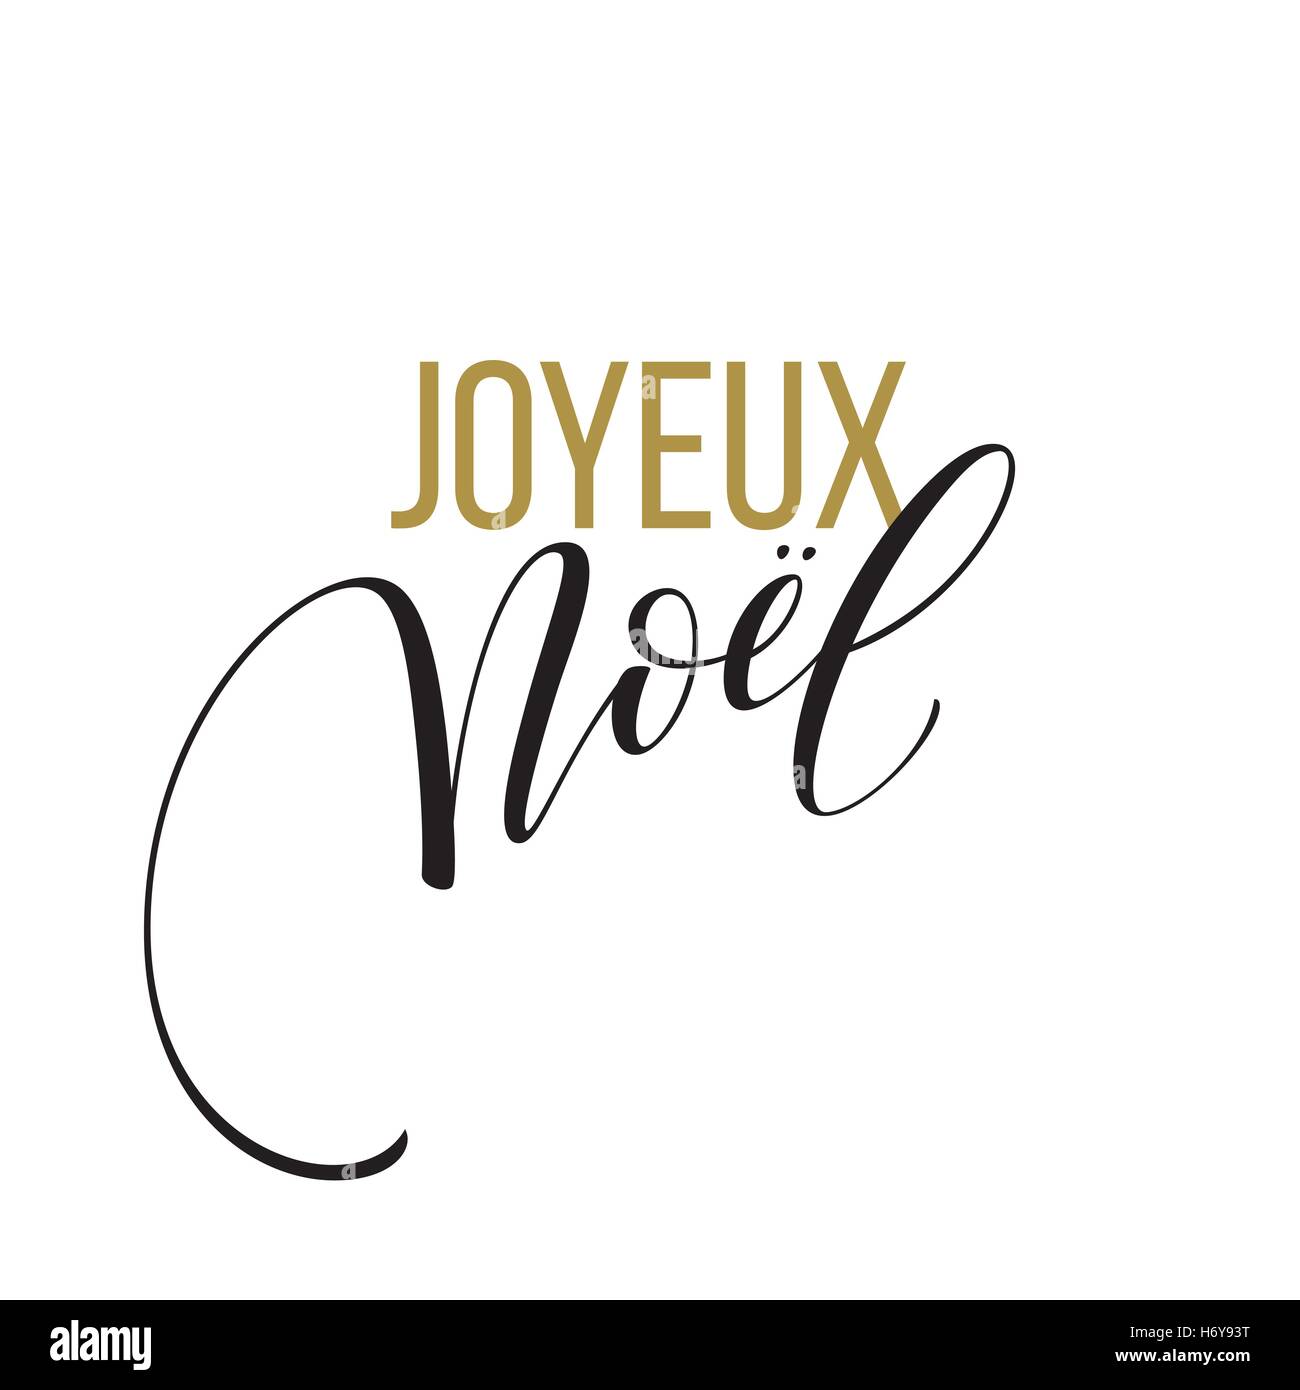 Modèle de carte de joyeux Noël avec les salutations en langue française. Joyeux noel. Illustration vecteur EPS10 Illustration de Vecteur